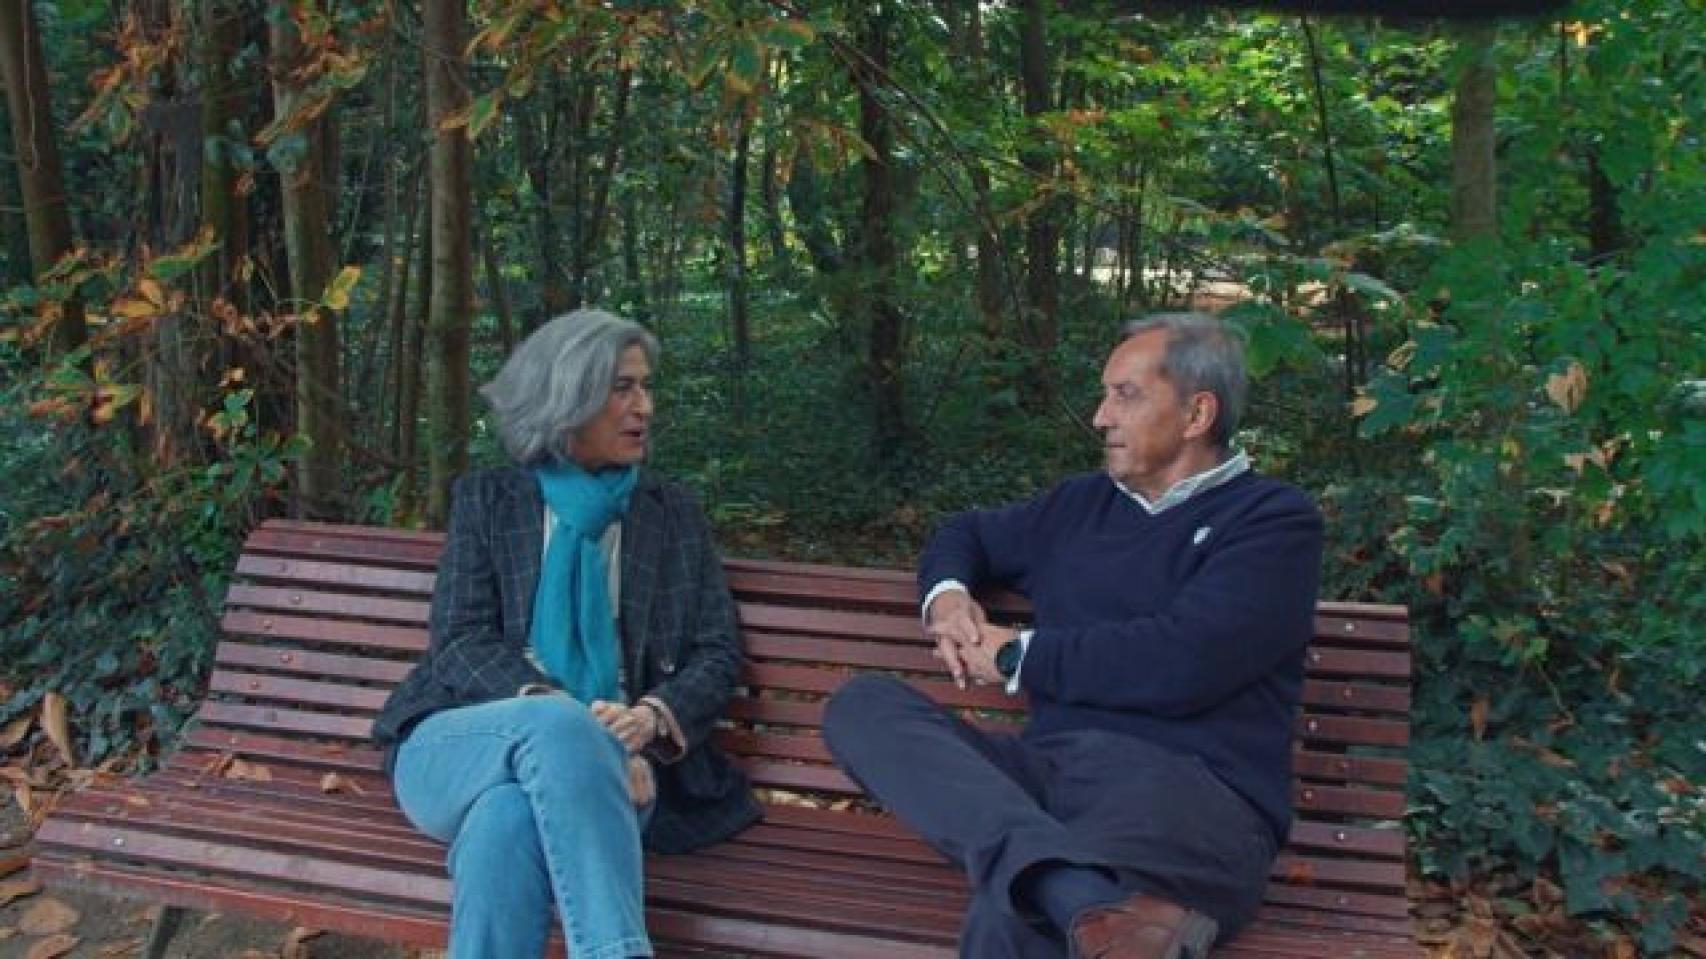 La historiadora y paisajista Mónica Luengo charlando con un invitado en el Campo Grande de Valladolid